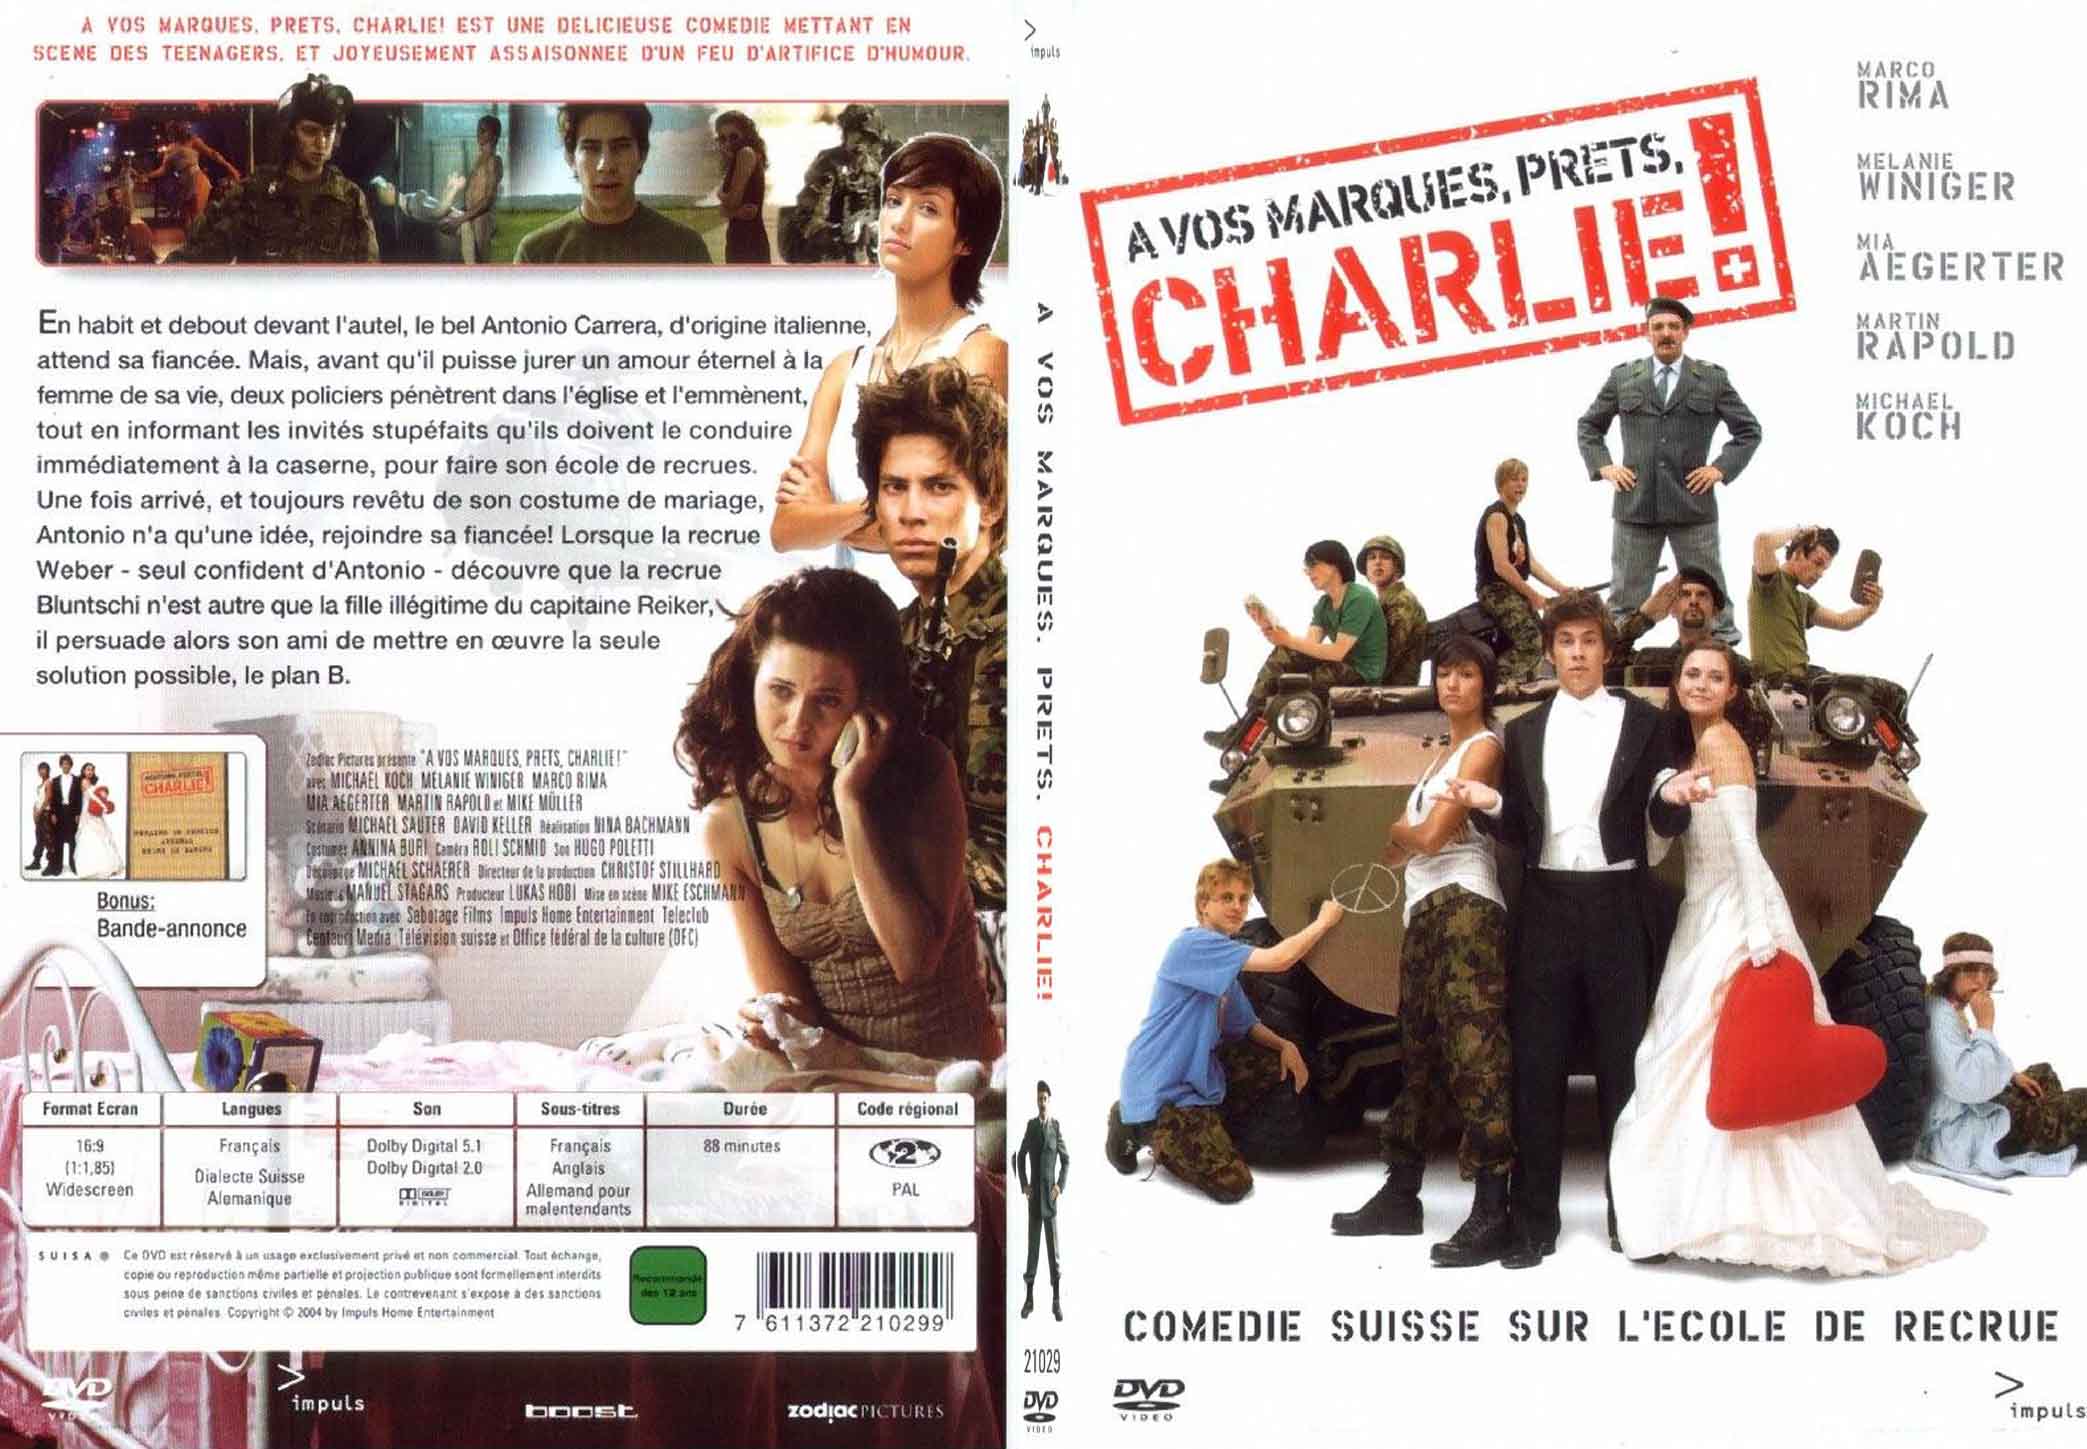 Jaquette DVD A vos marques prets Charlie - SLIM